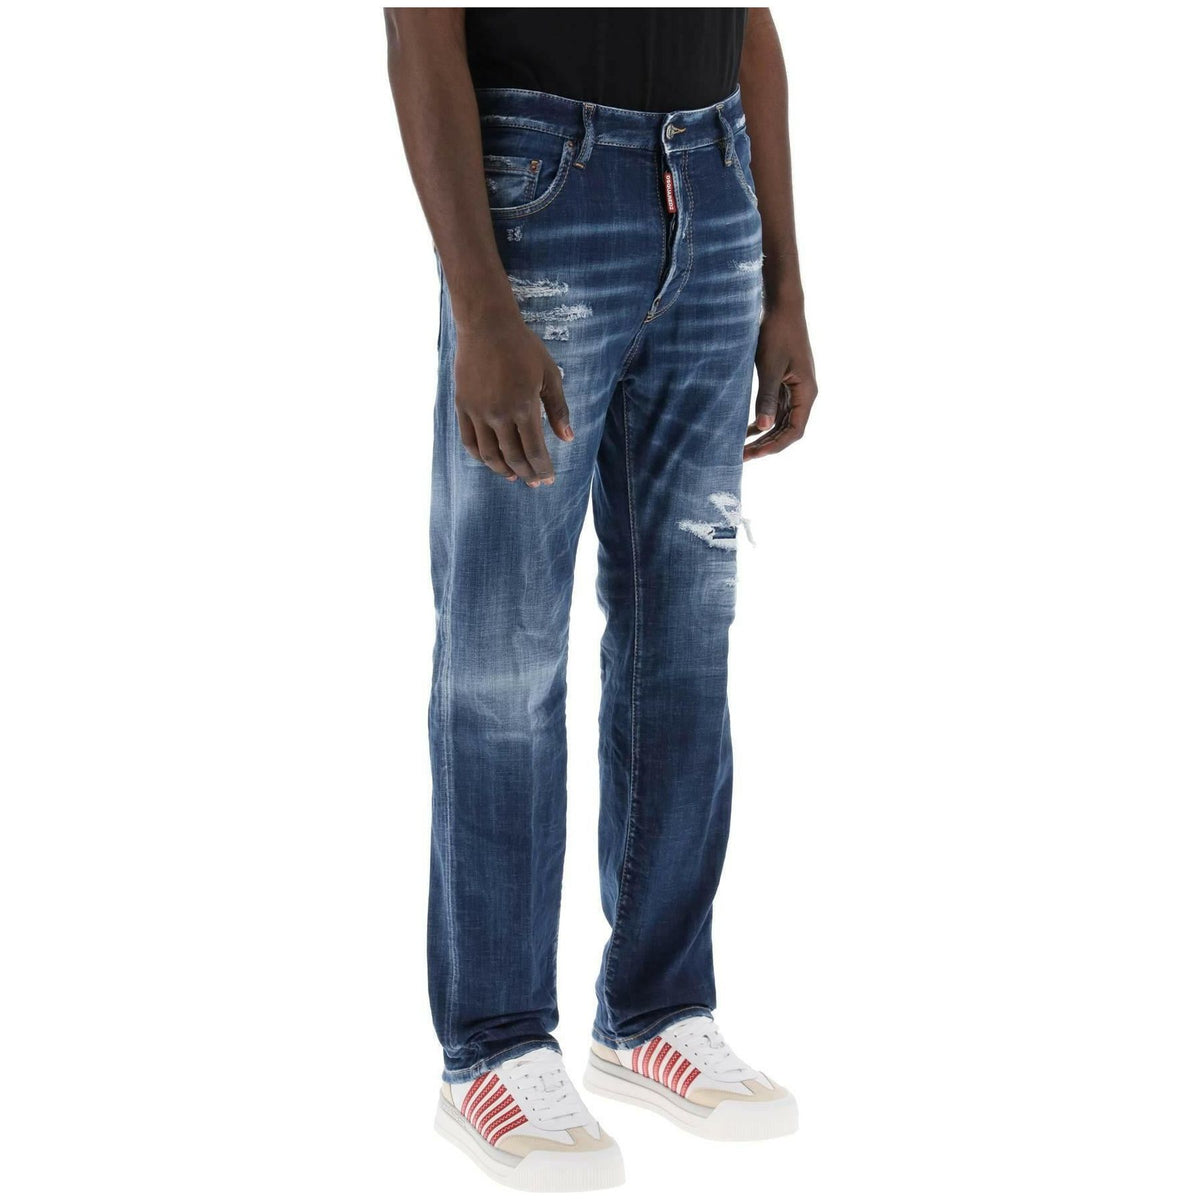 Dsquared2 642 Jeans In Denim Destroyed Wash - JOHN JULIA